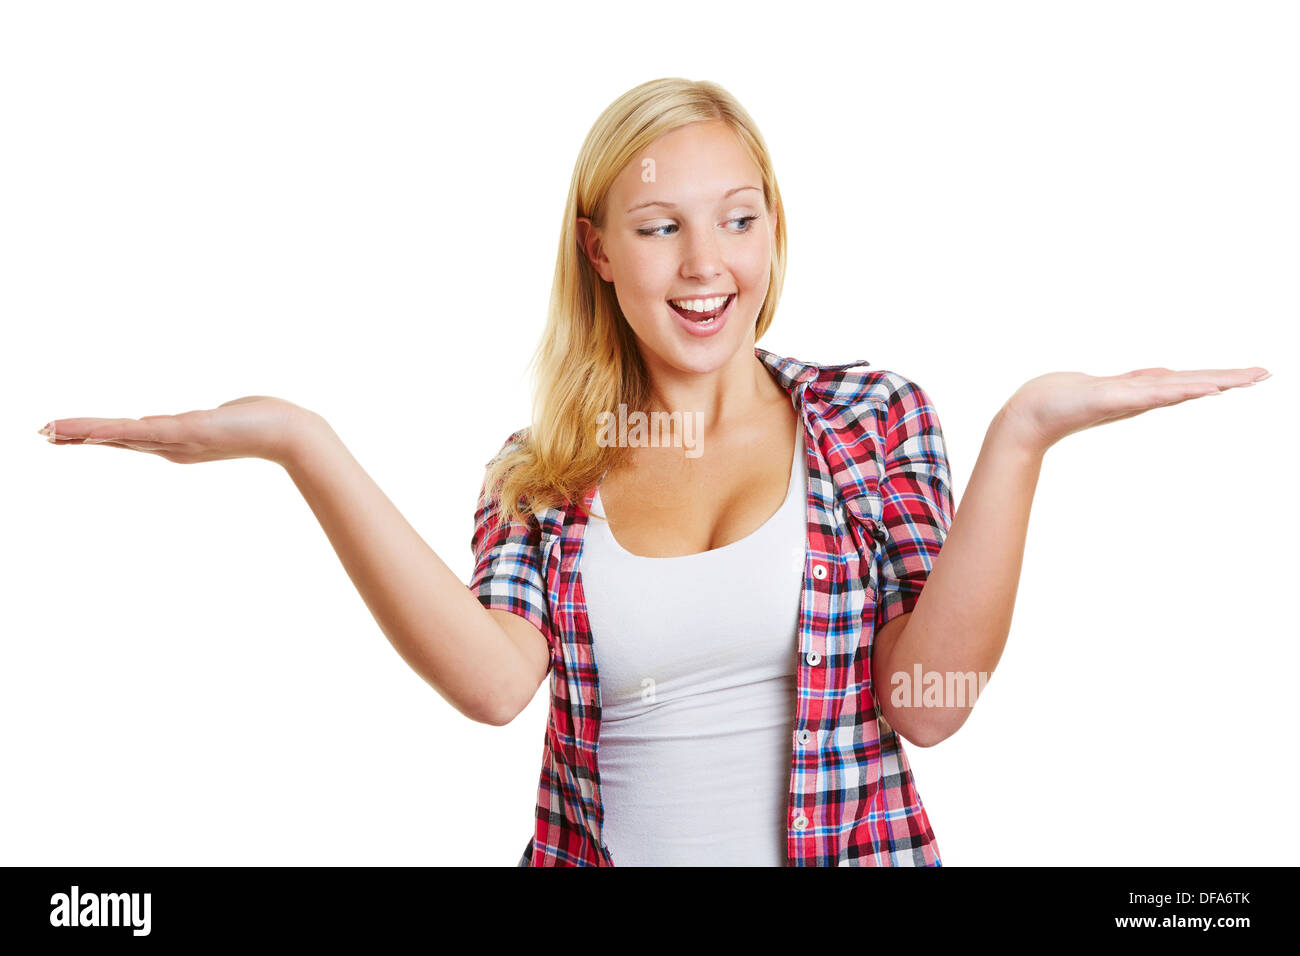 Glückliche junge Frau hält beide Hände öffnen, um unsichtbare Produkte vergleichen Stockfoto